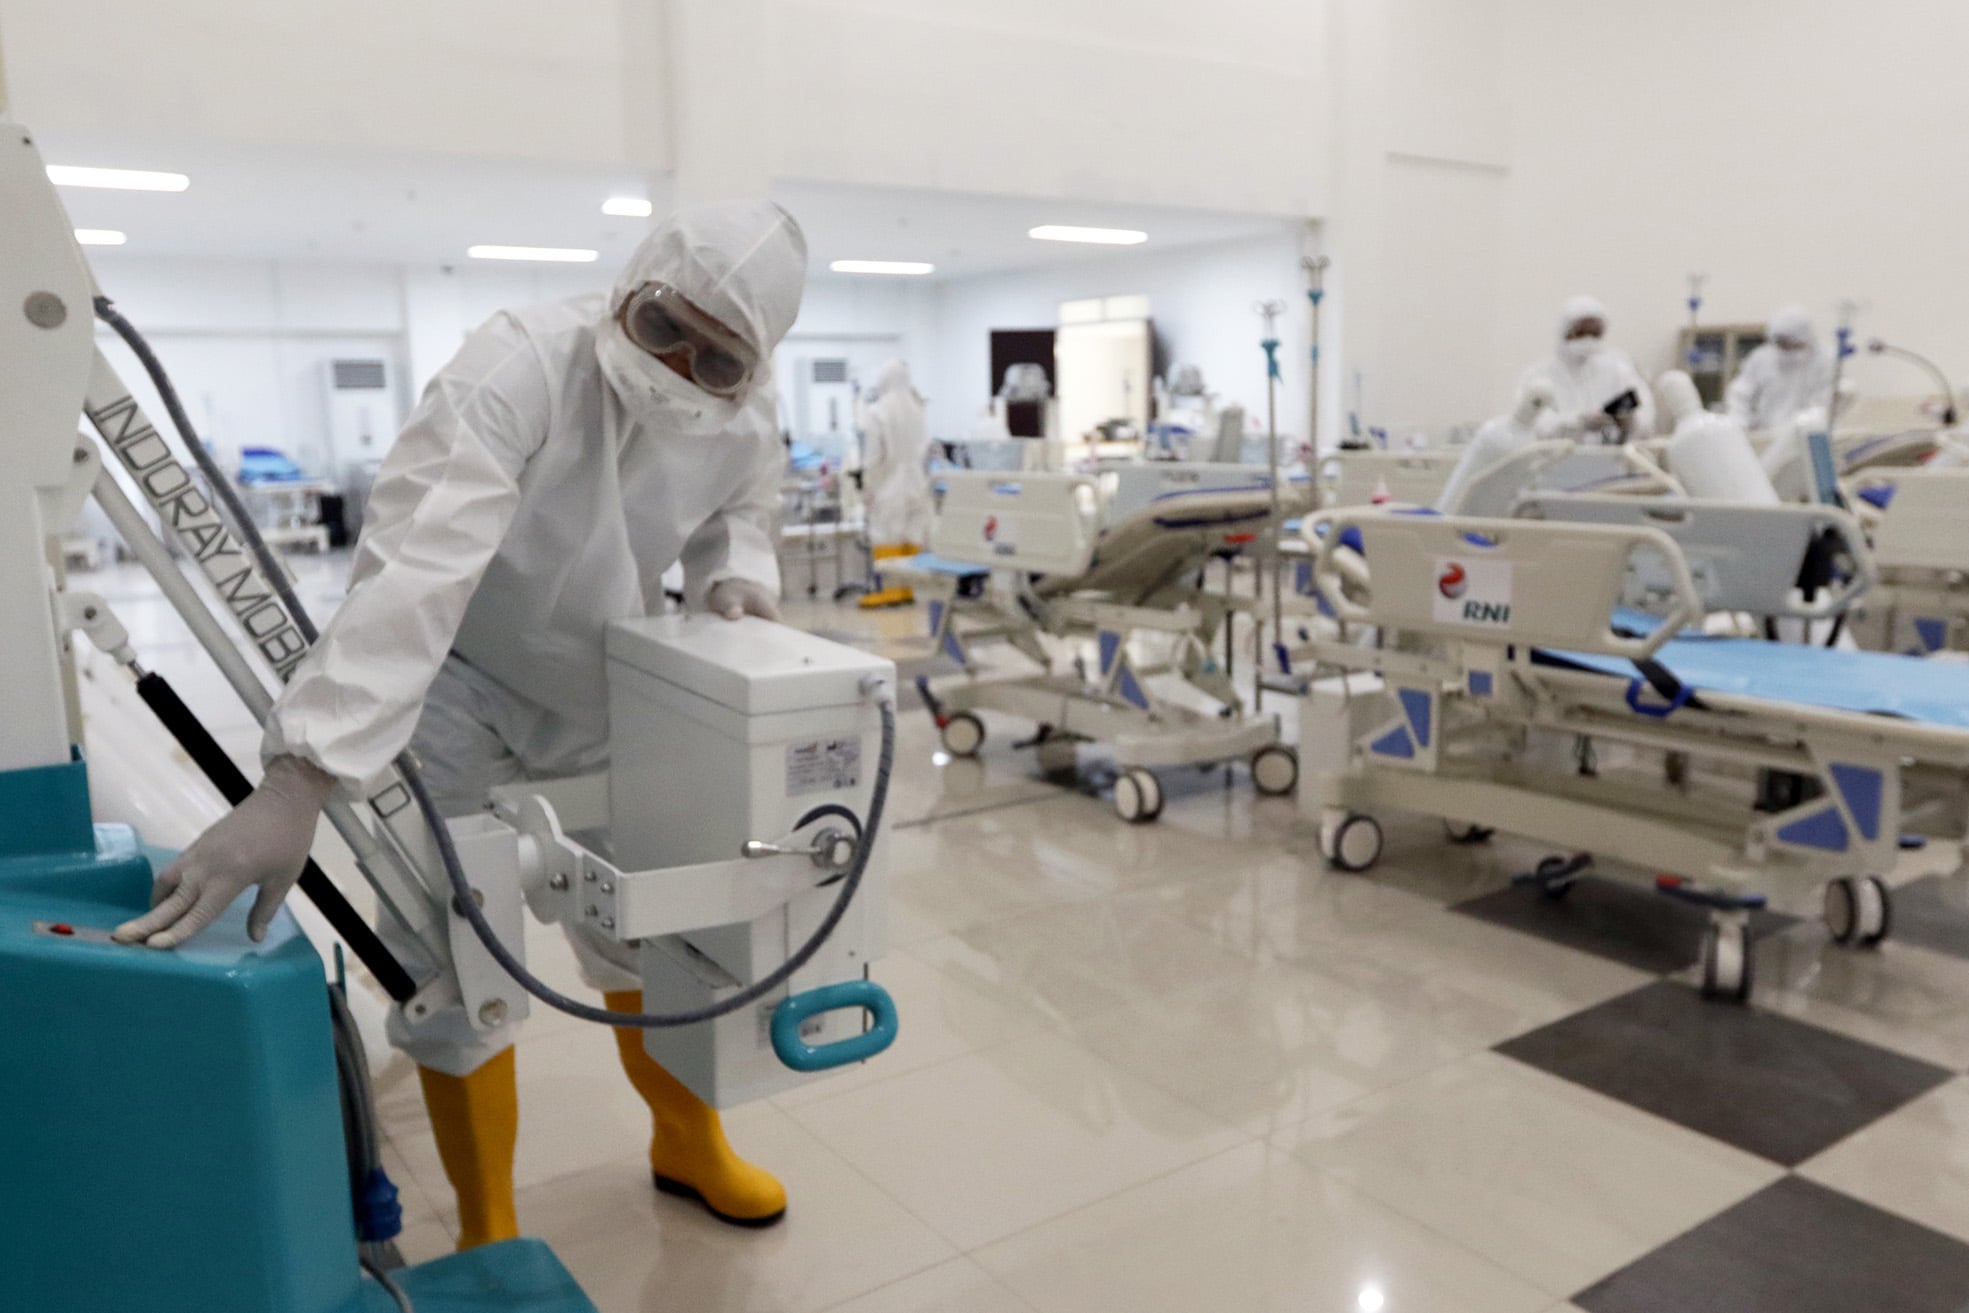 Warga Majalengka dan Indramayu Dikabarkan Terinfeksi Omicron, Baru Pulang dari Arab Saudi